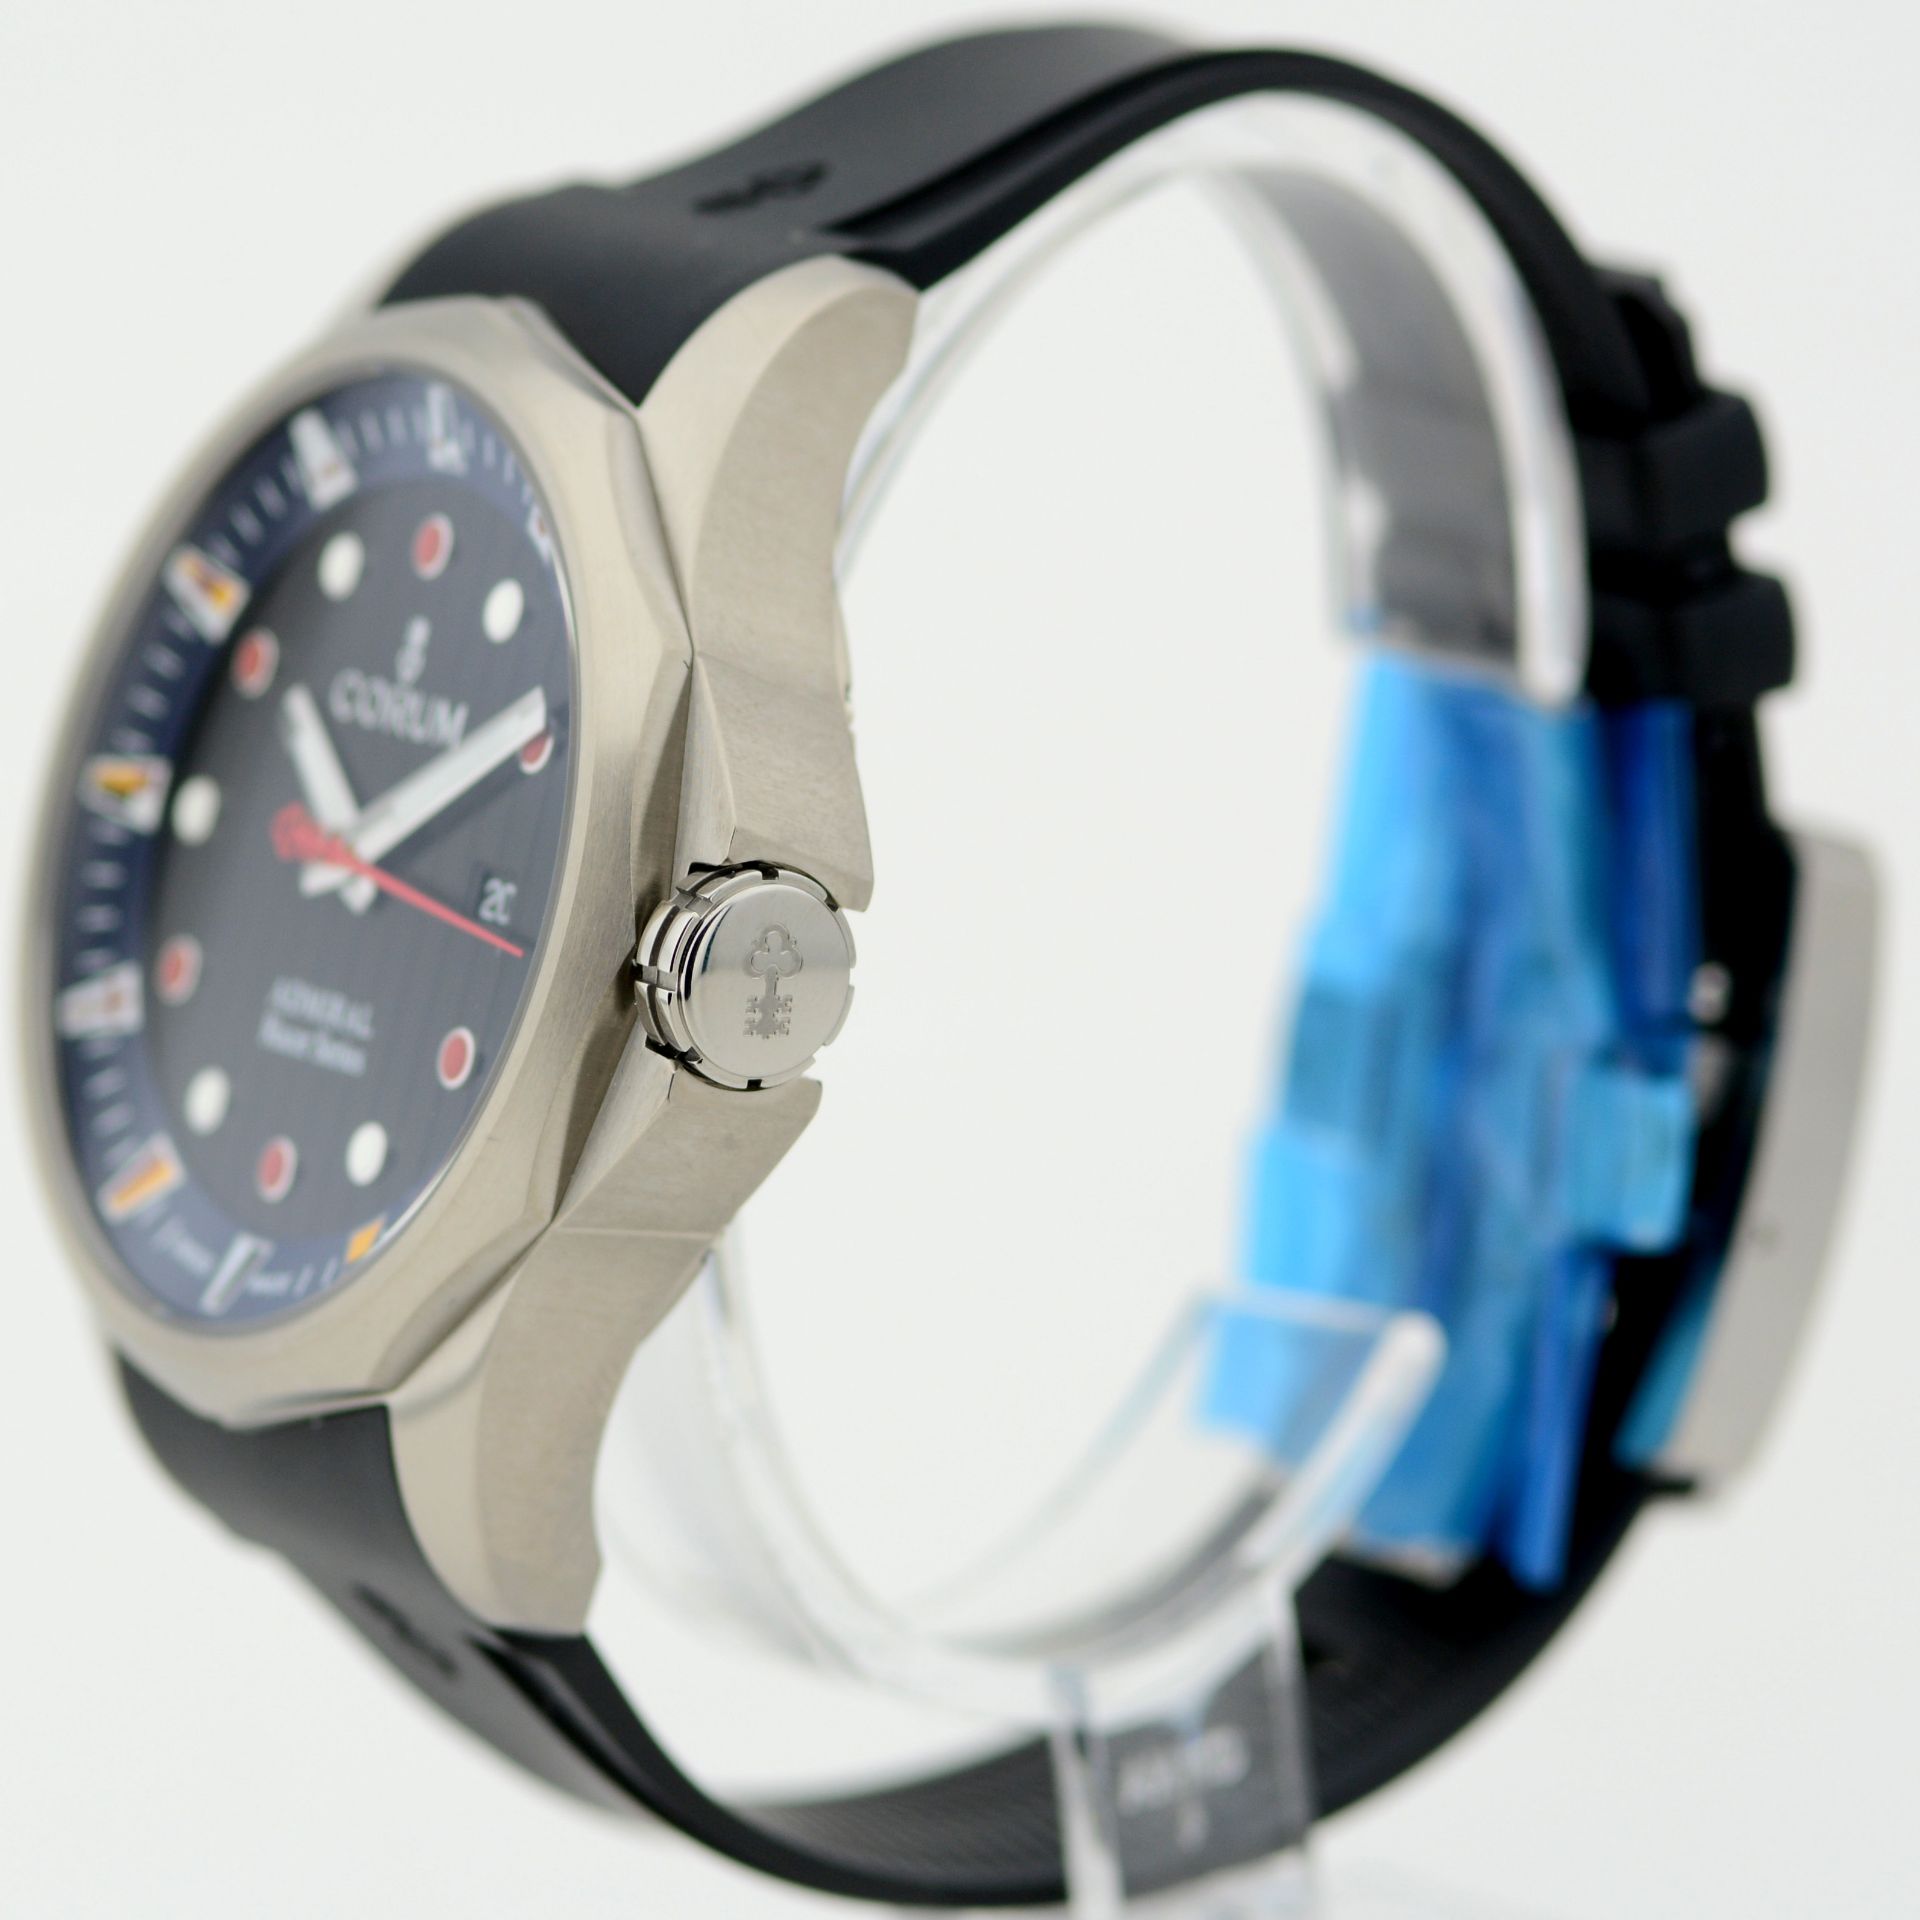 Corum / Admirals Cup Racer (Unworn) - Gentlmen's Steel Wrist Watch - Image 3 of 6